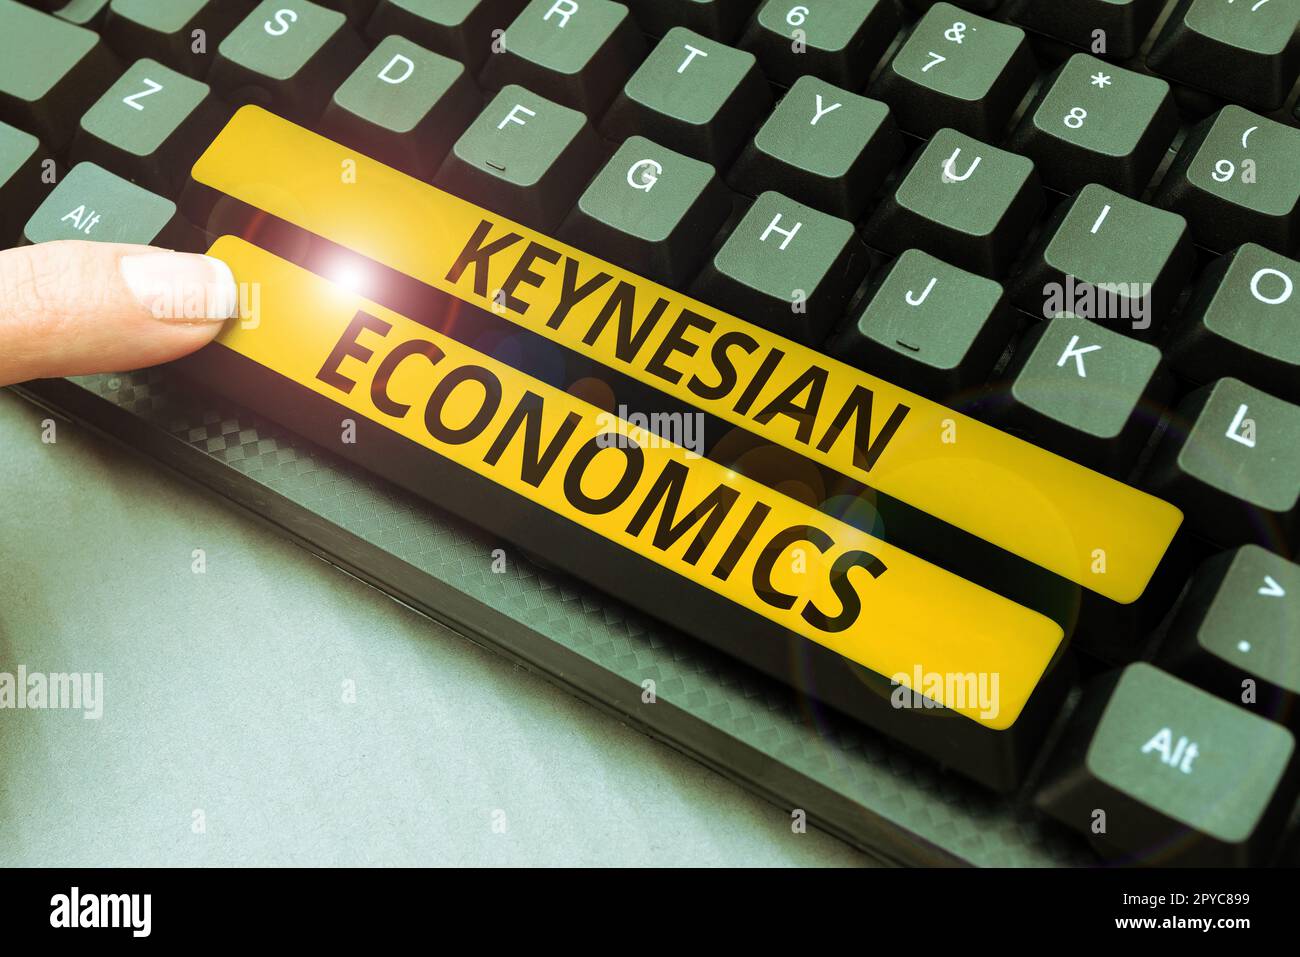 Begrifflicher Titel Keynesianische Ökonomie. Konzeptionelle fotografische monetäre und finanzpolitische Programme der Regierung zur Steigerung der Beschäftigung Stockfoto